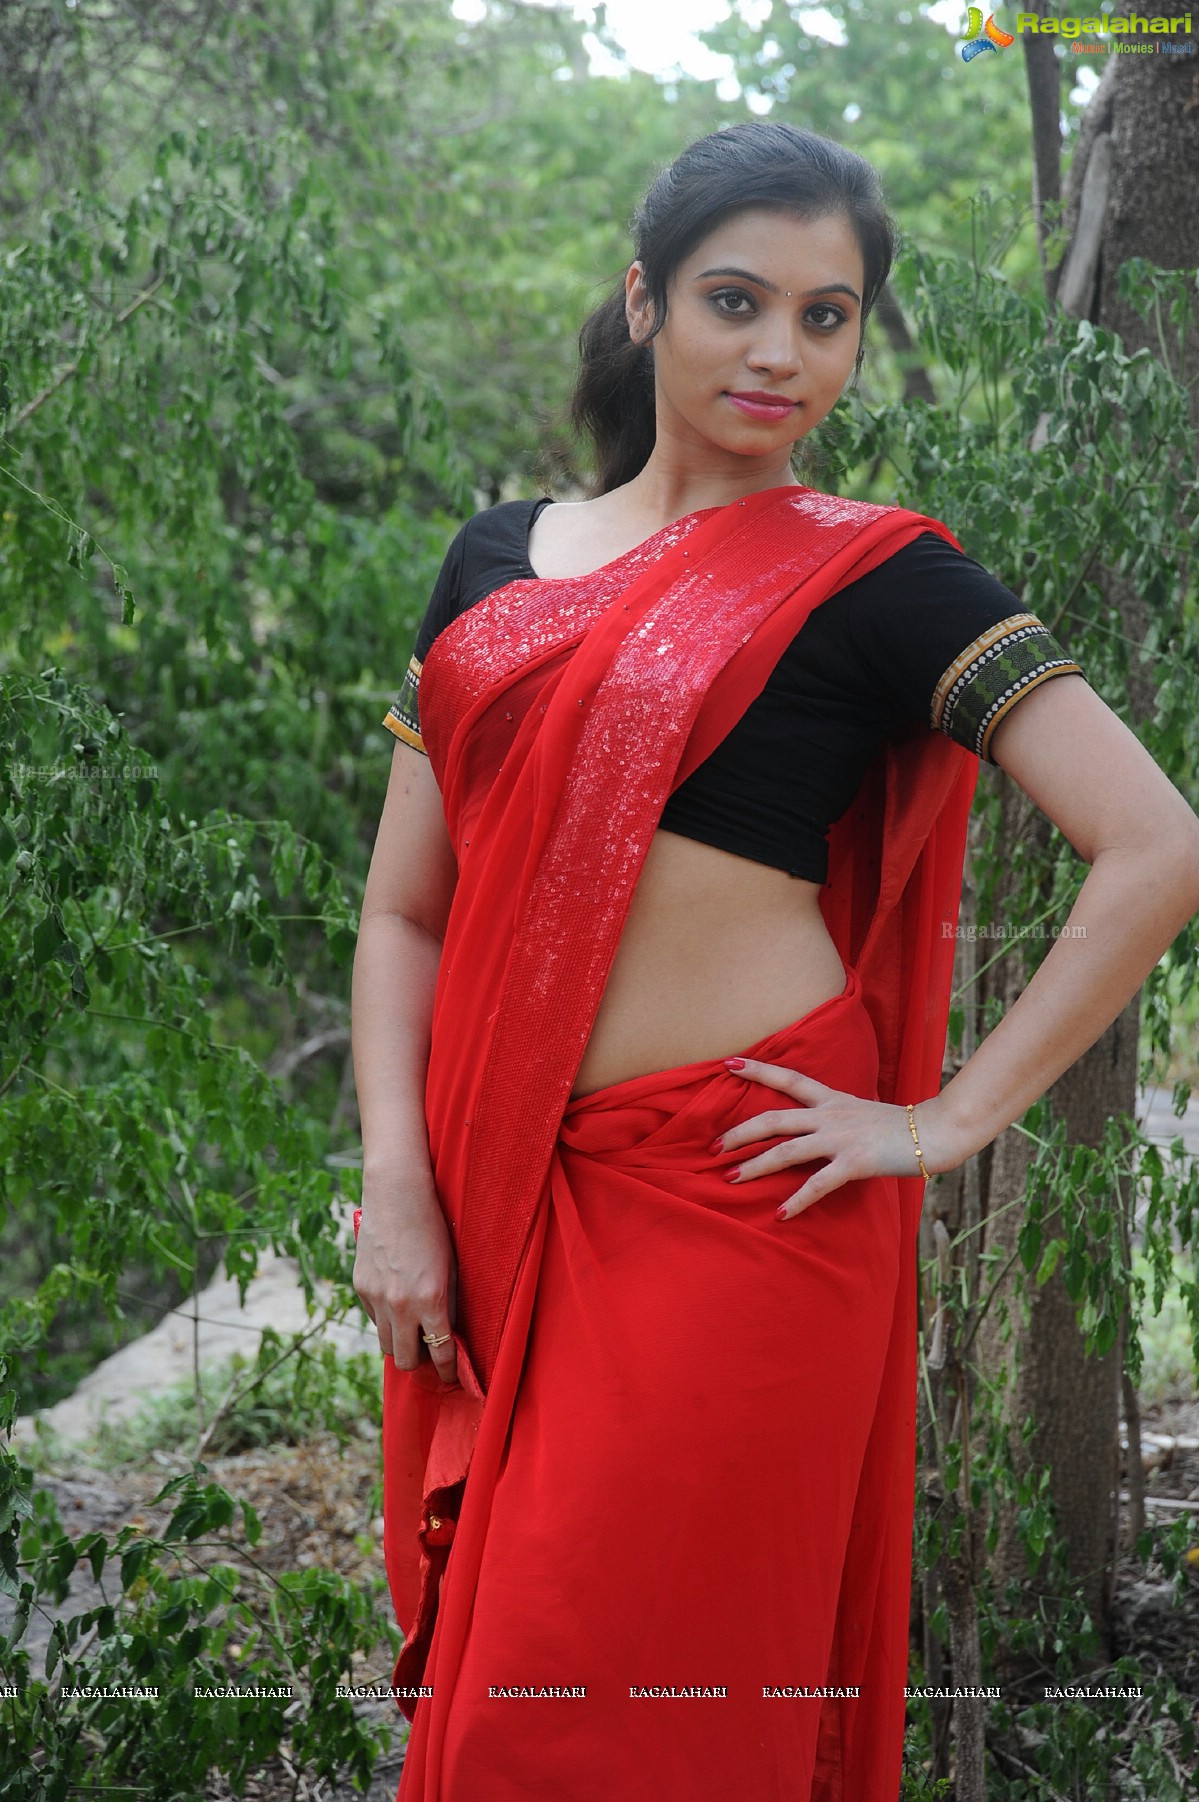 Priyanka